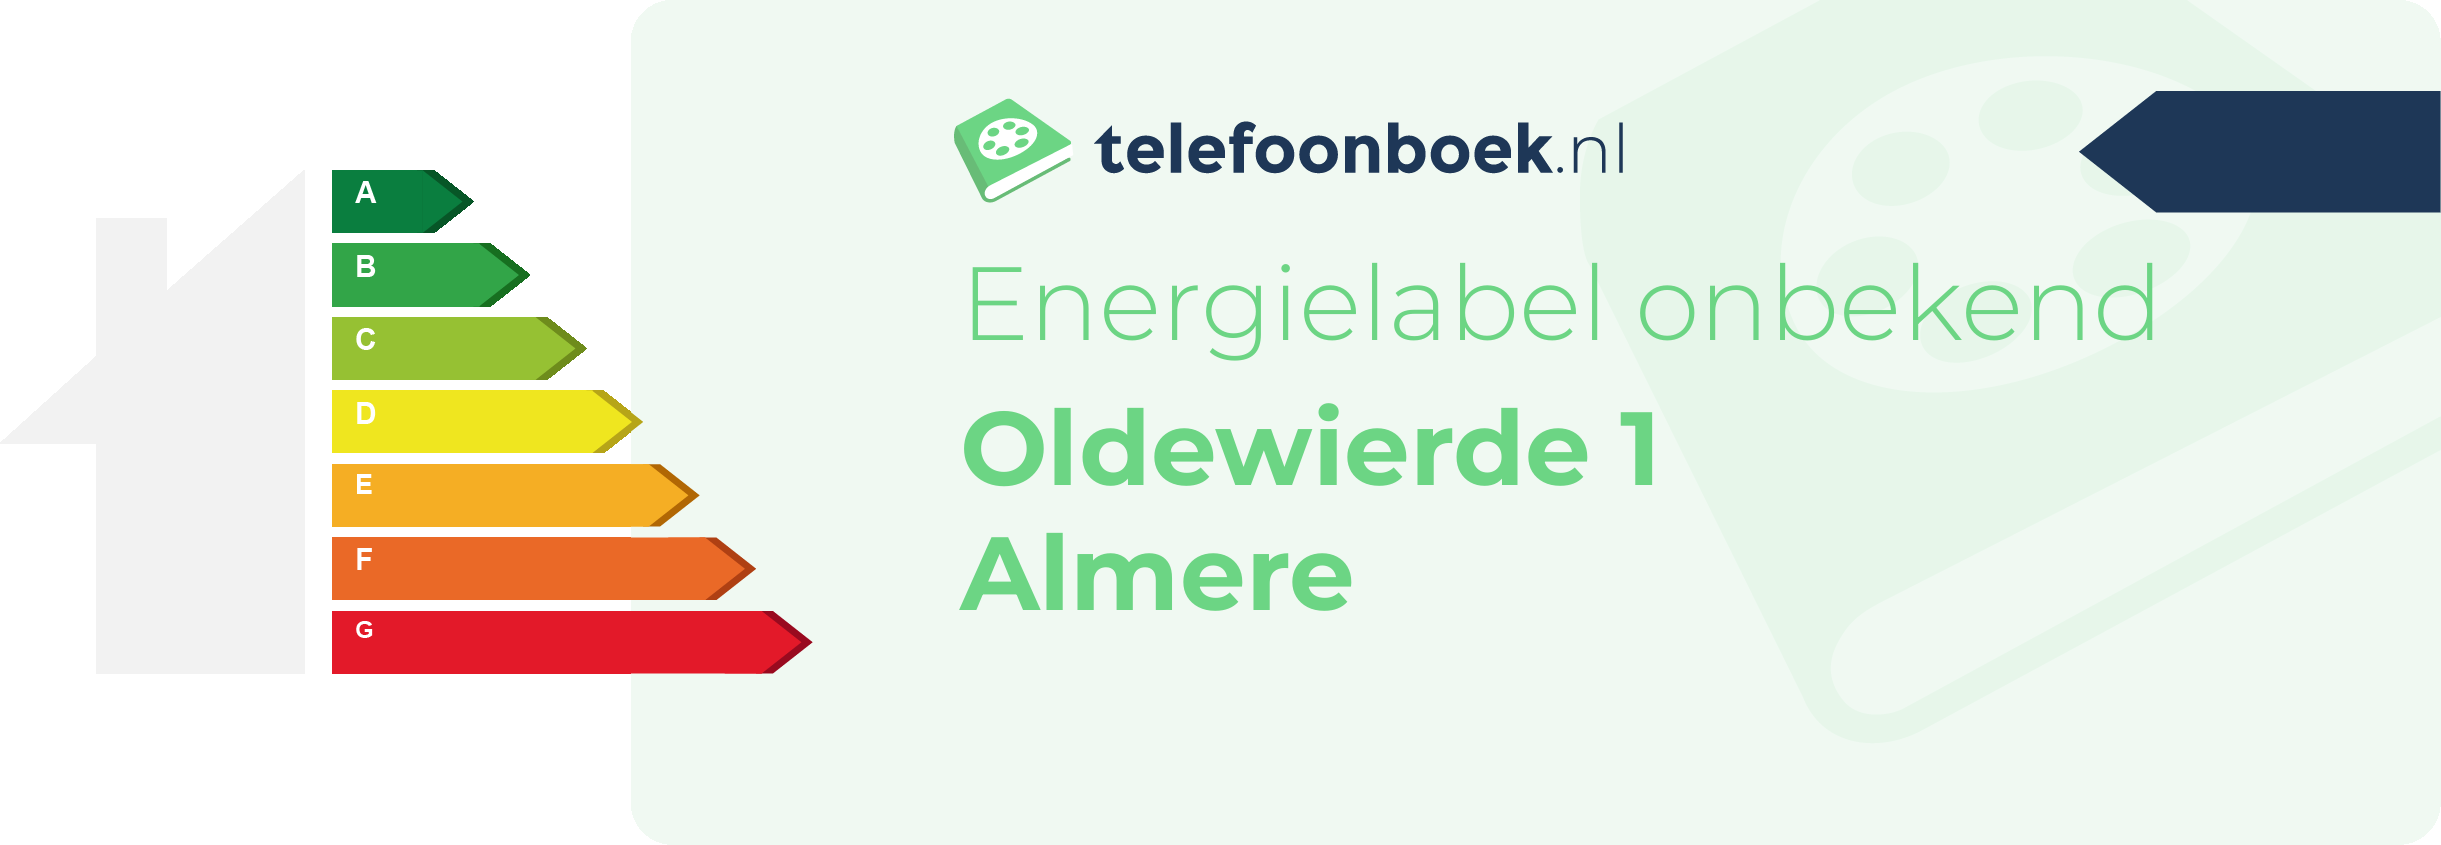 Energielabel Oldewierde 1 Almere